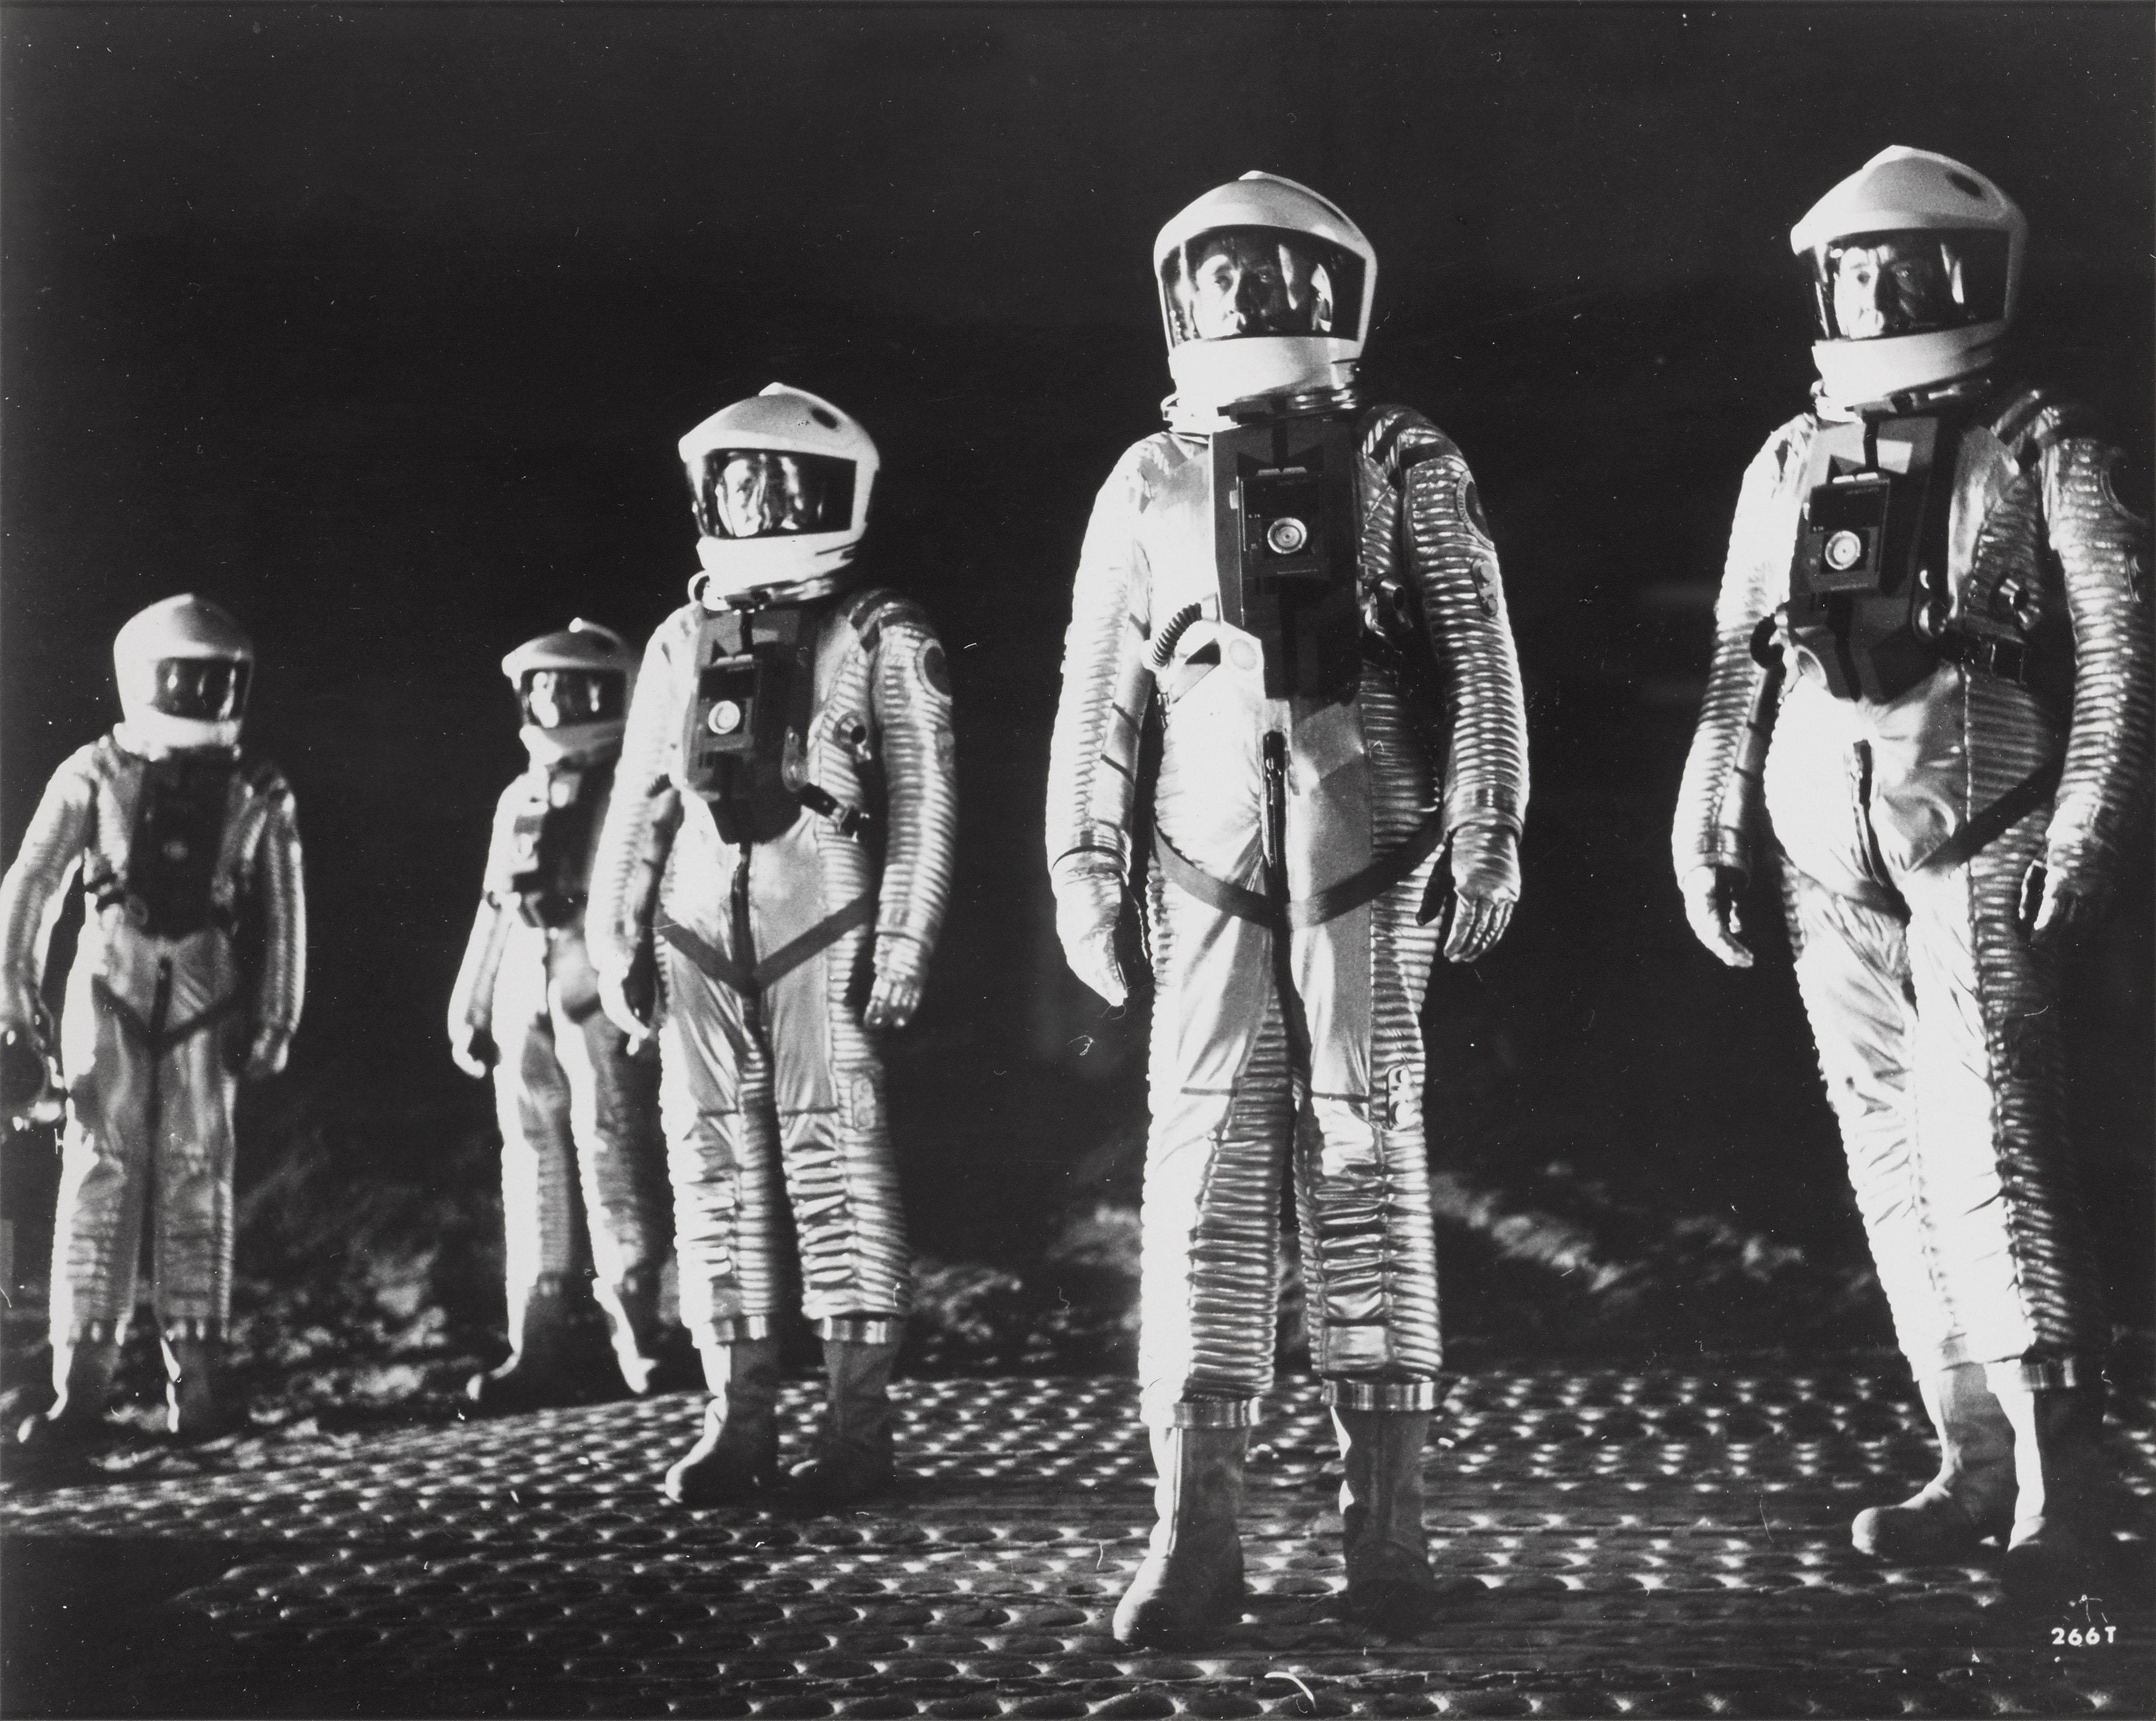 Original-Fotostandbild zu Stanley Kubricks bahnbrechendem Science-Fiction-Film, der noch immer als einer der einflussreichsten Science-Fiction-Filme aller Zeiten gilt.
Auf der Rückseite des Bildes befinden sich einige Originalinformationen, die